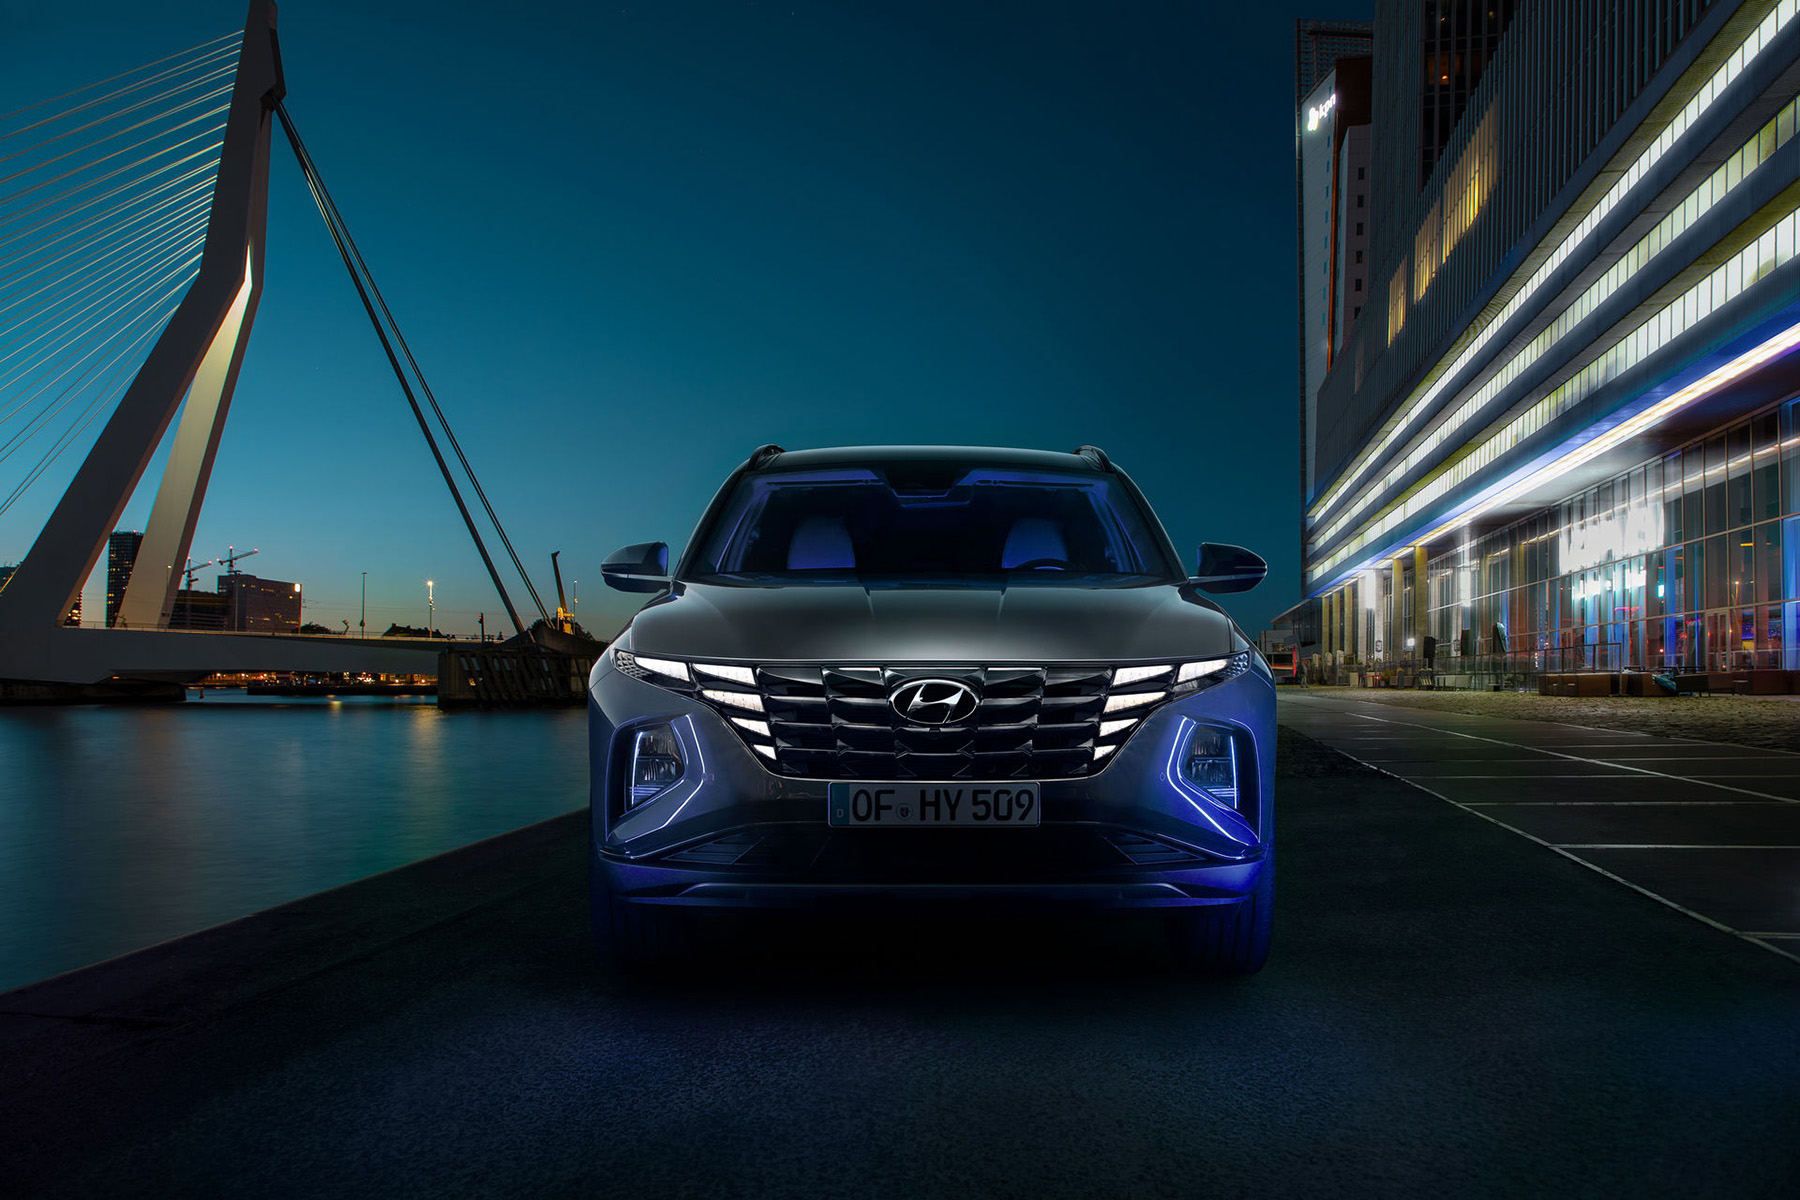 Hyundai Tucson 2021 là sự kết hợp hoàn hảo giữa phong cách và hiệu suất cao. Khám phá những hình ảnh đầy ấn tượng của mẫu xe này để hiểu vì sao nó trở thành sự lựa chọn hoàn hảo cho những chuyến đi dài.